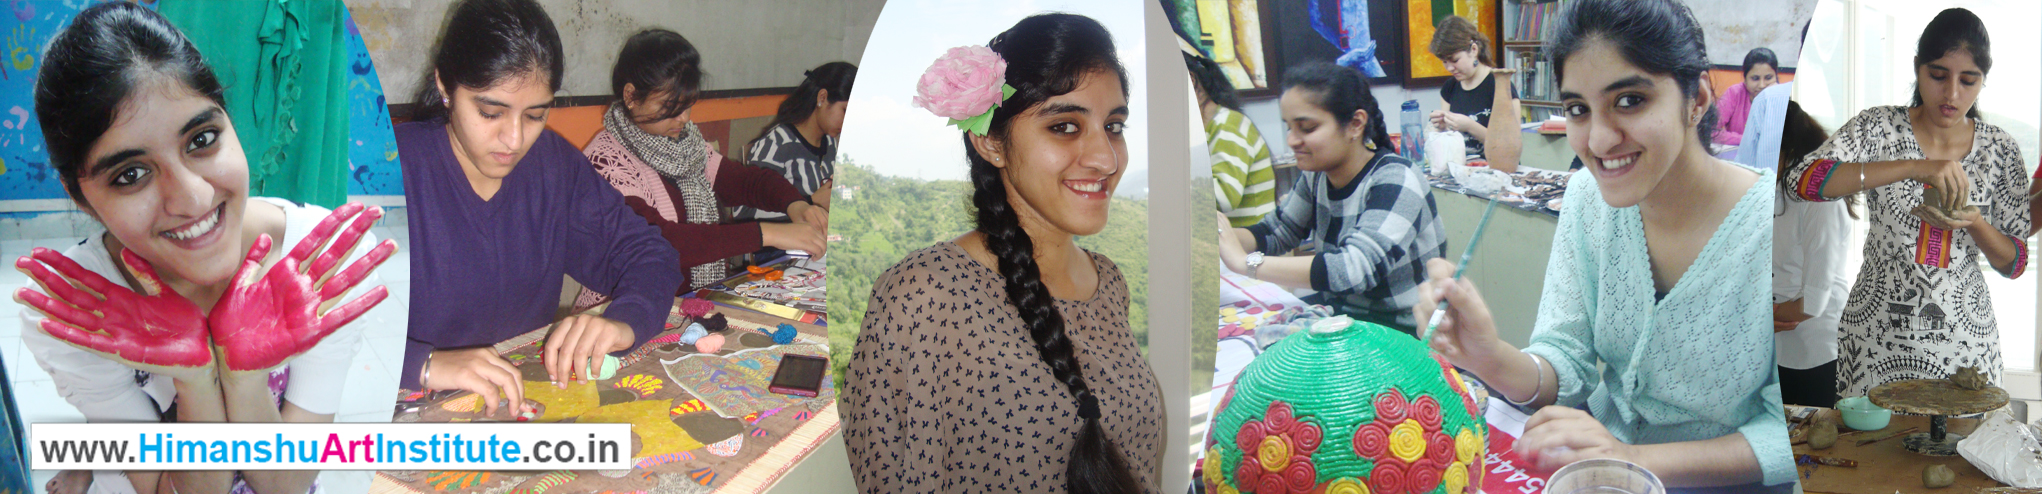 Simranjeet Kaur Craft Work, Art & Craft Institute in Delhi